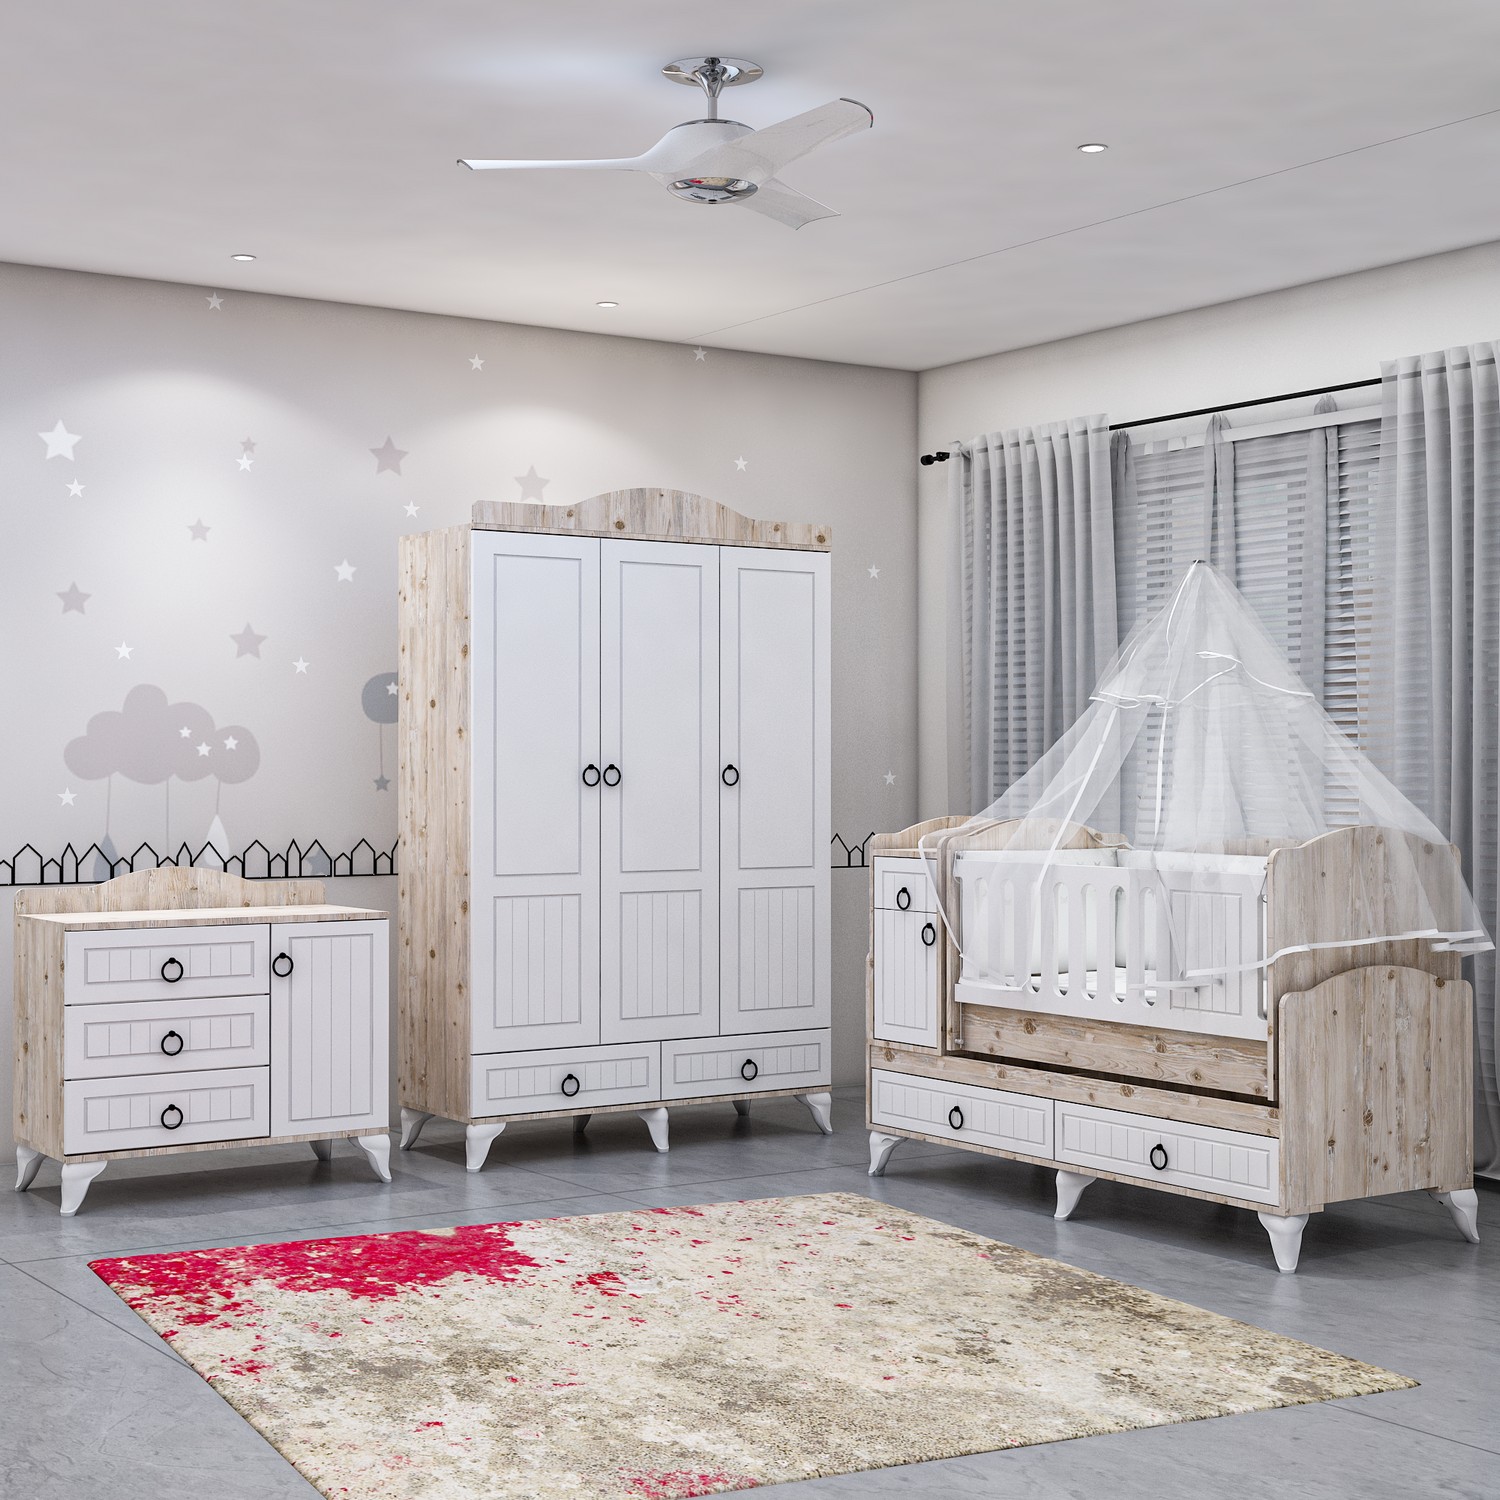 Sude Beyaz Membran Country Asansörlü Bebek Odası Takımı Yatak ve Uyku